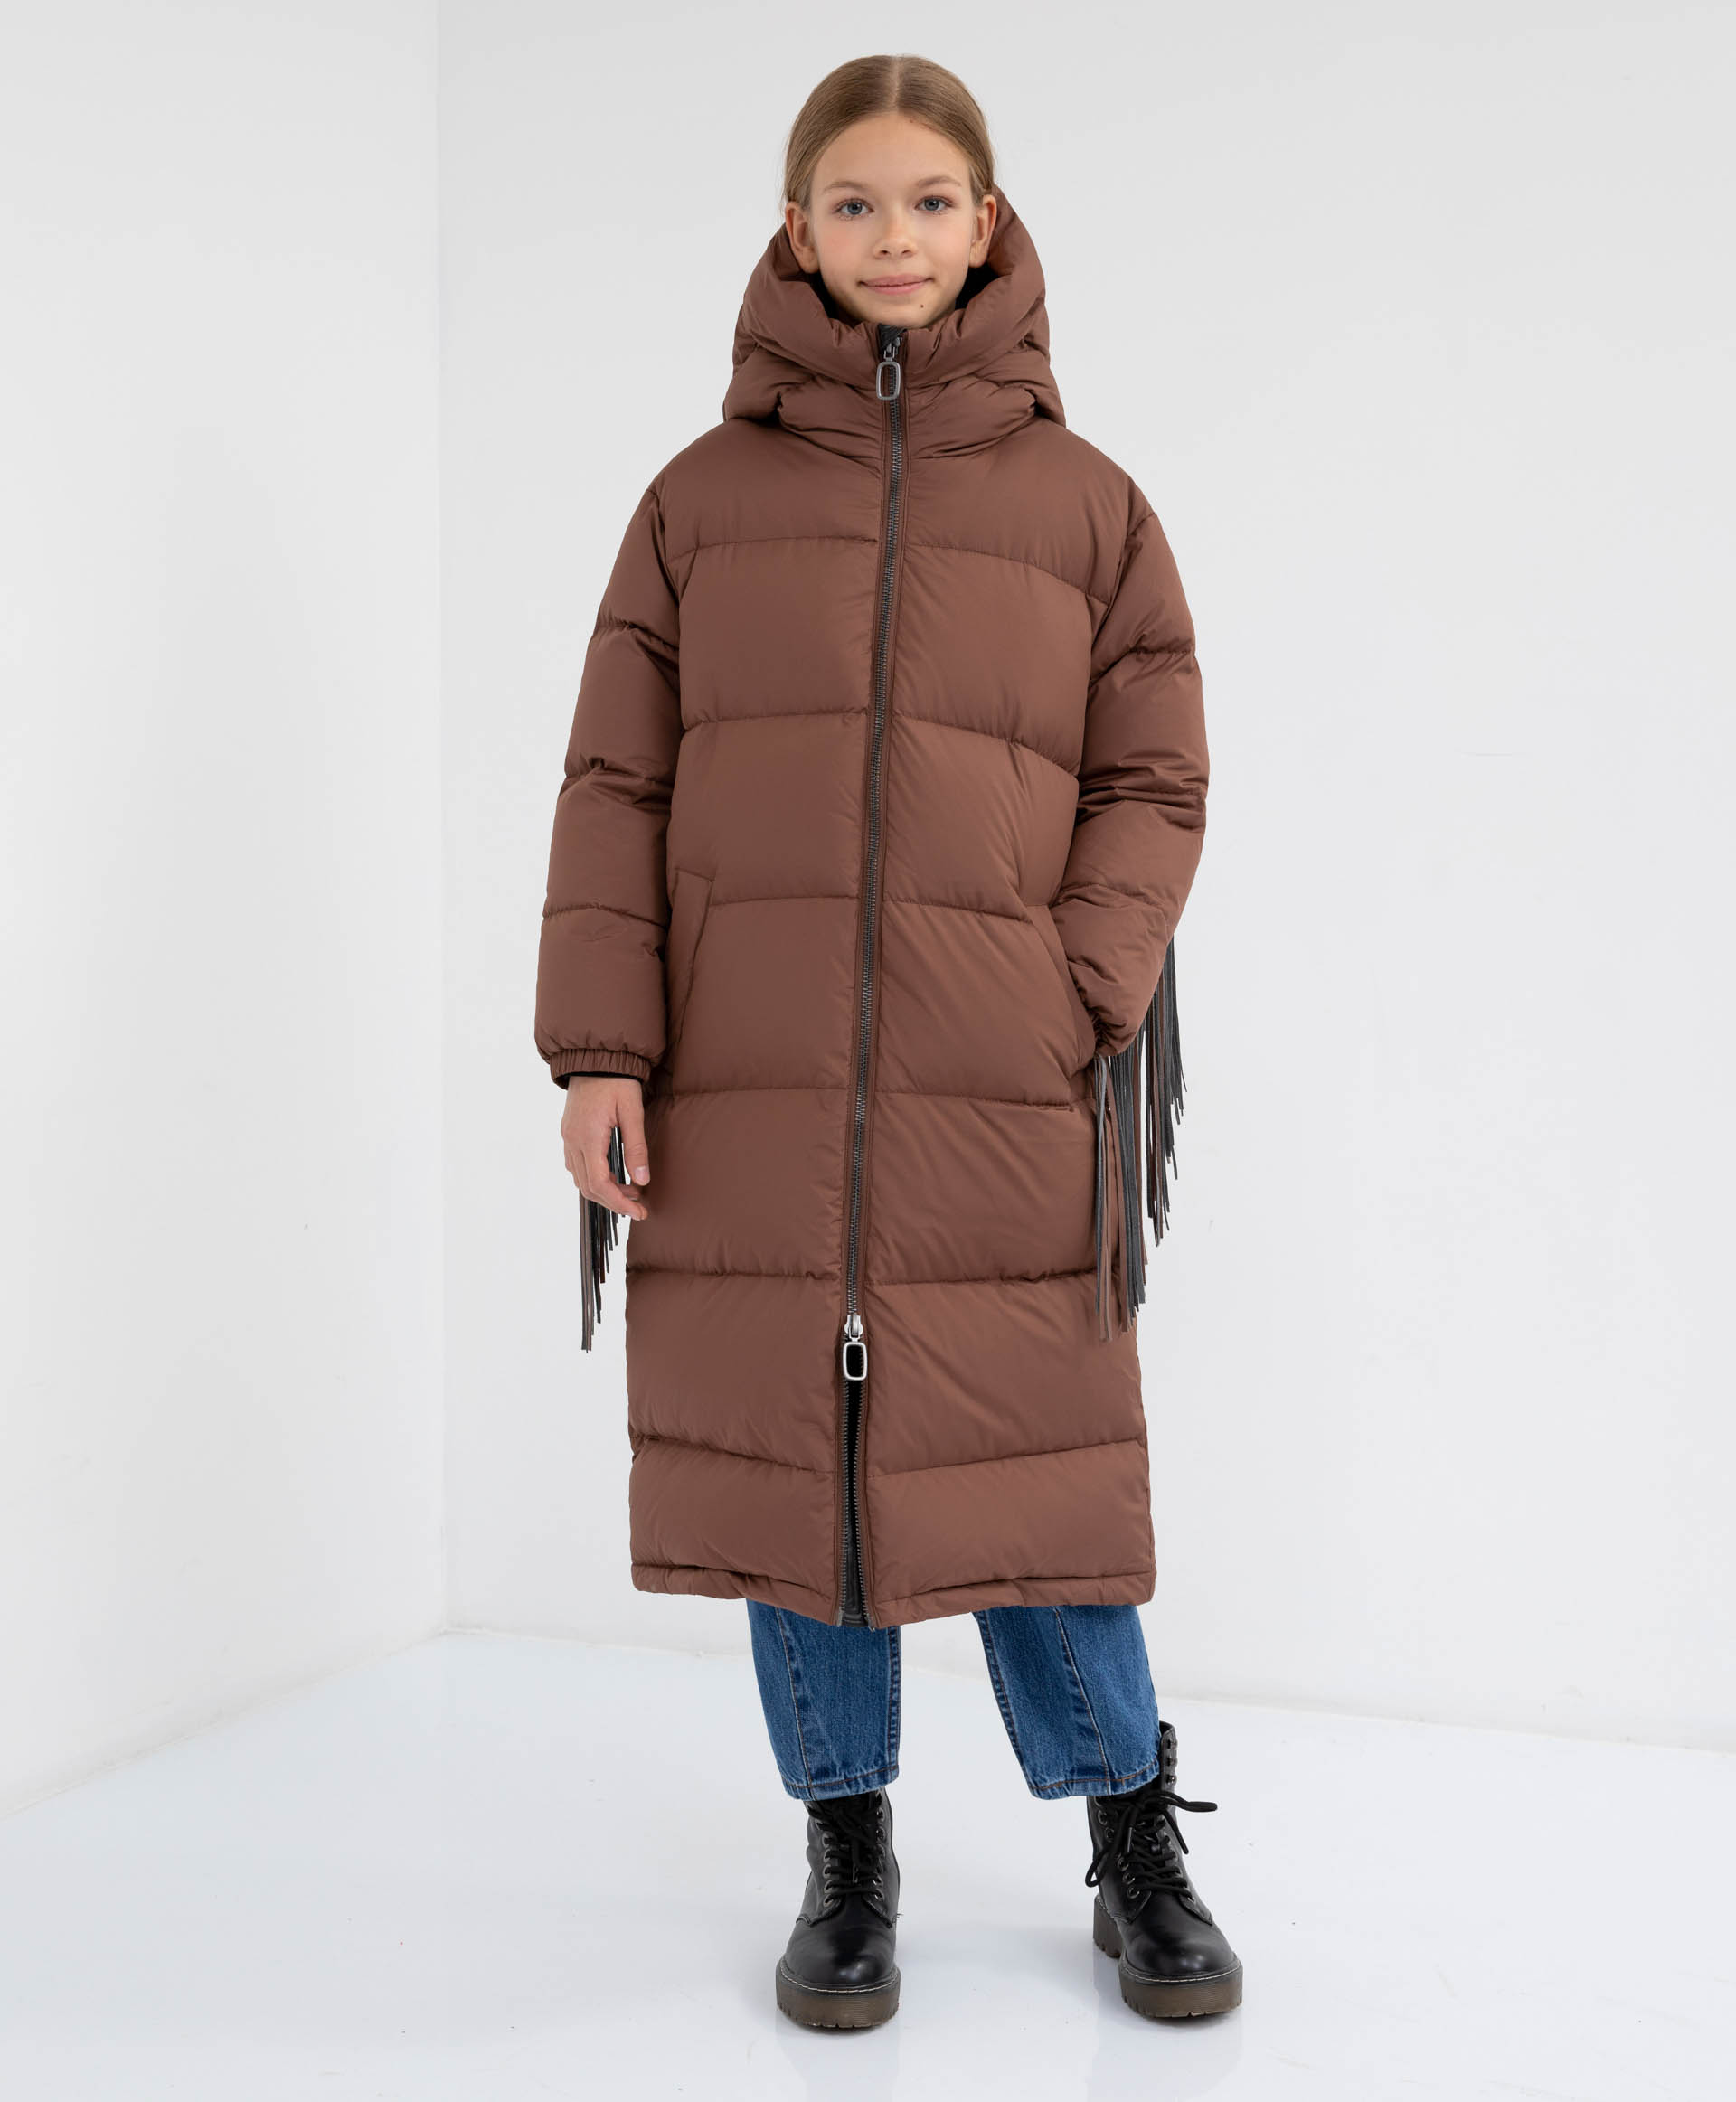 Пальто зимнее с капюшоном Gulliver 22108GJC4502, размер 164, цвет коричневый - фото 2